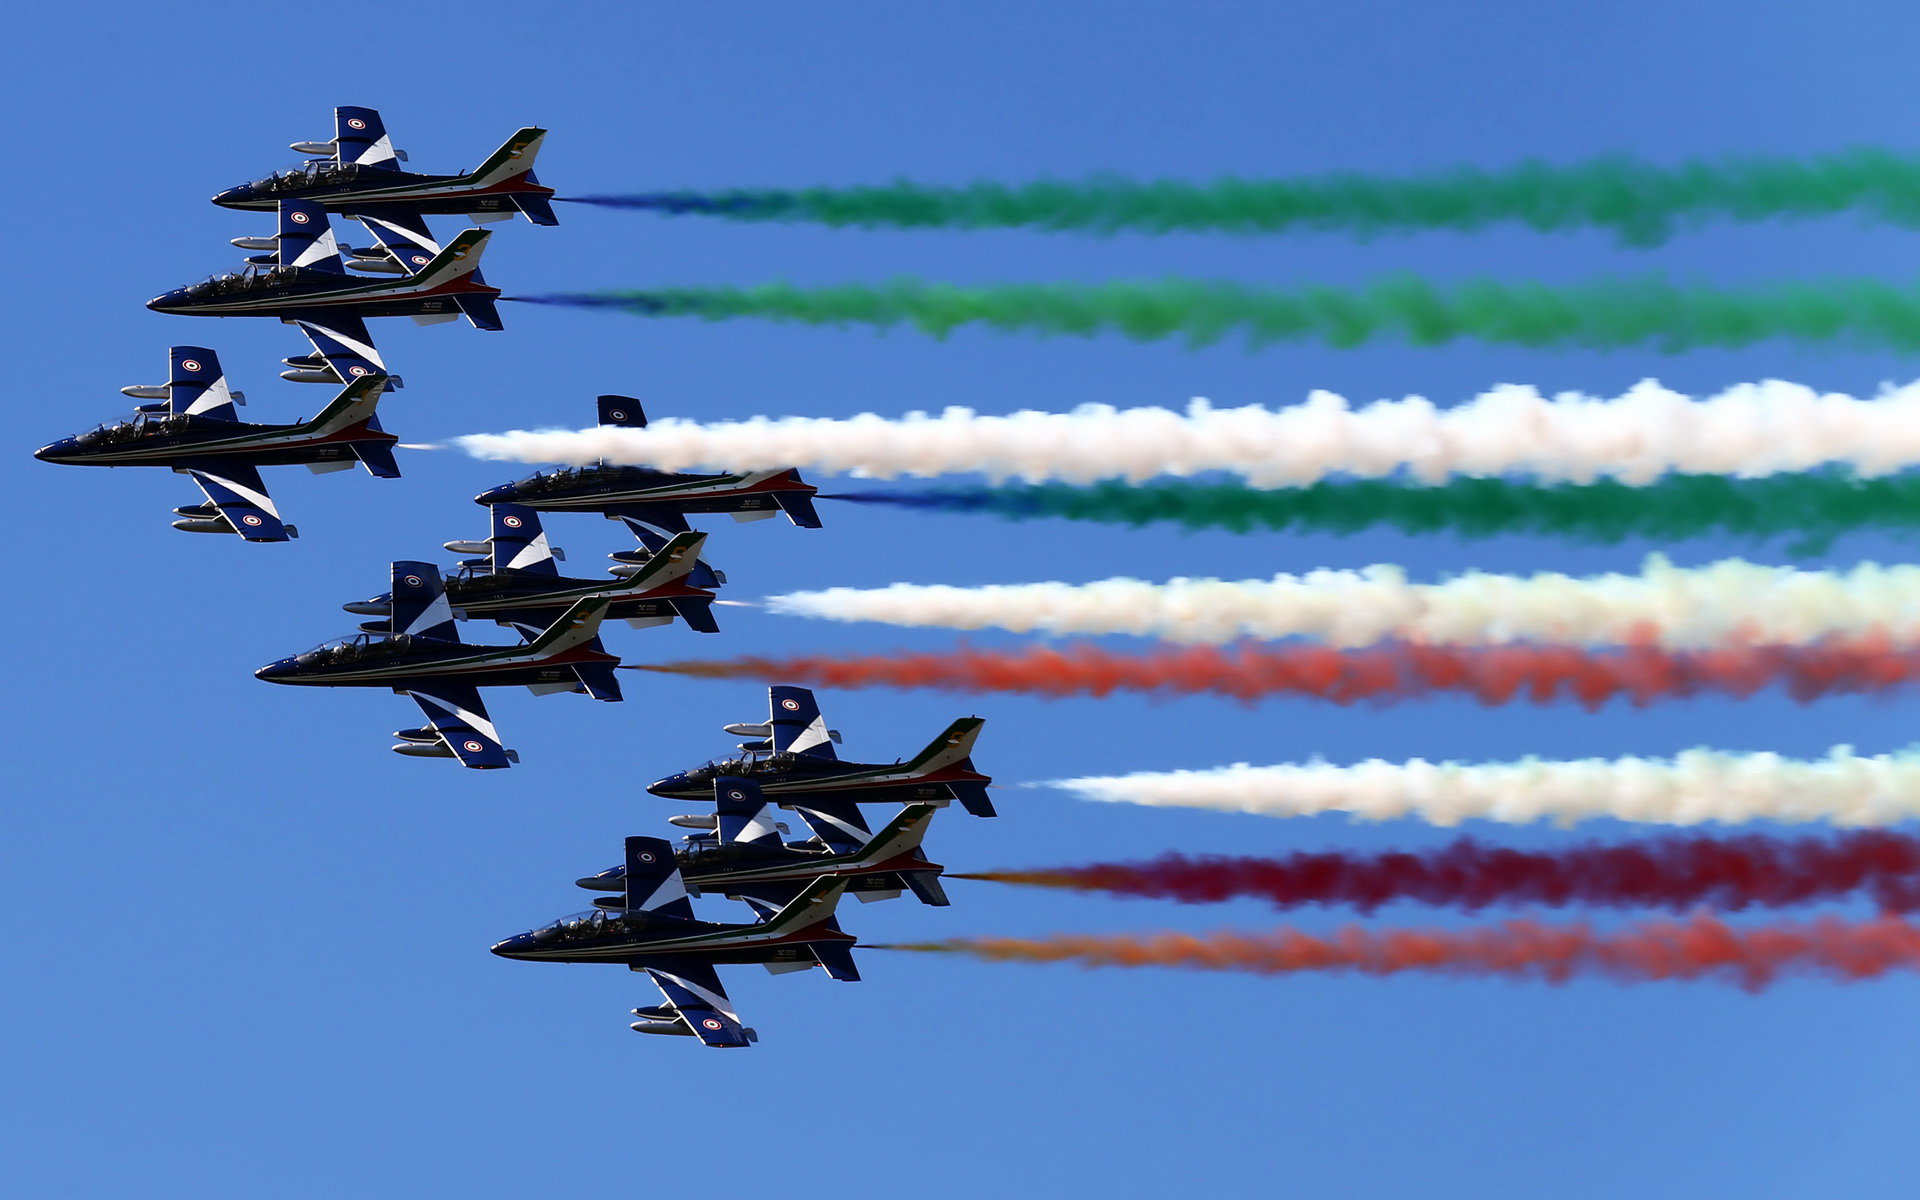 Letecká show před závodem, GP Itálie (Monza)